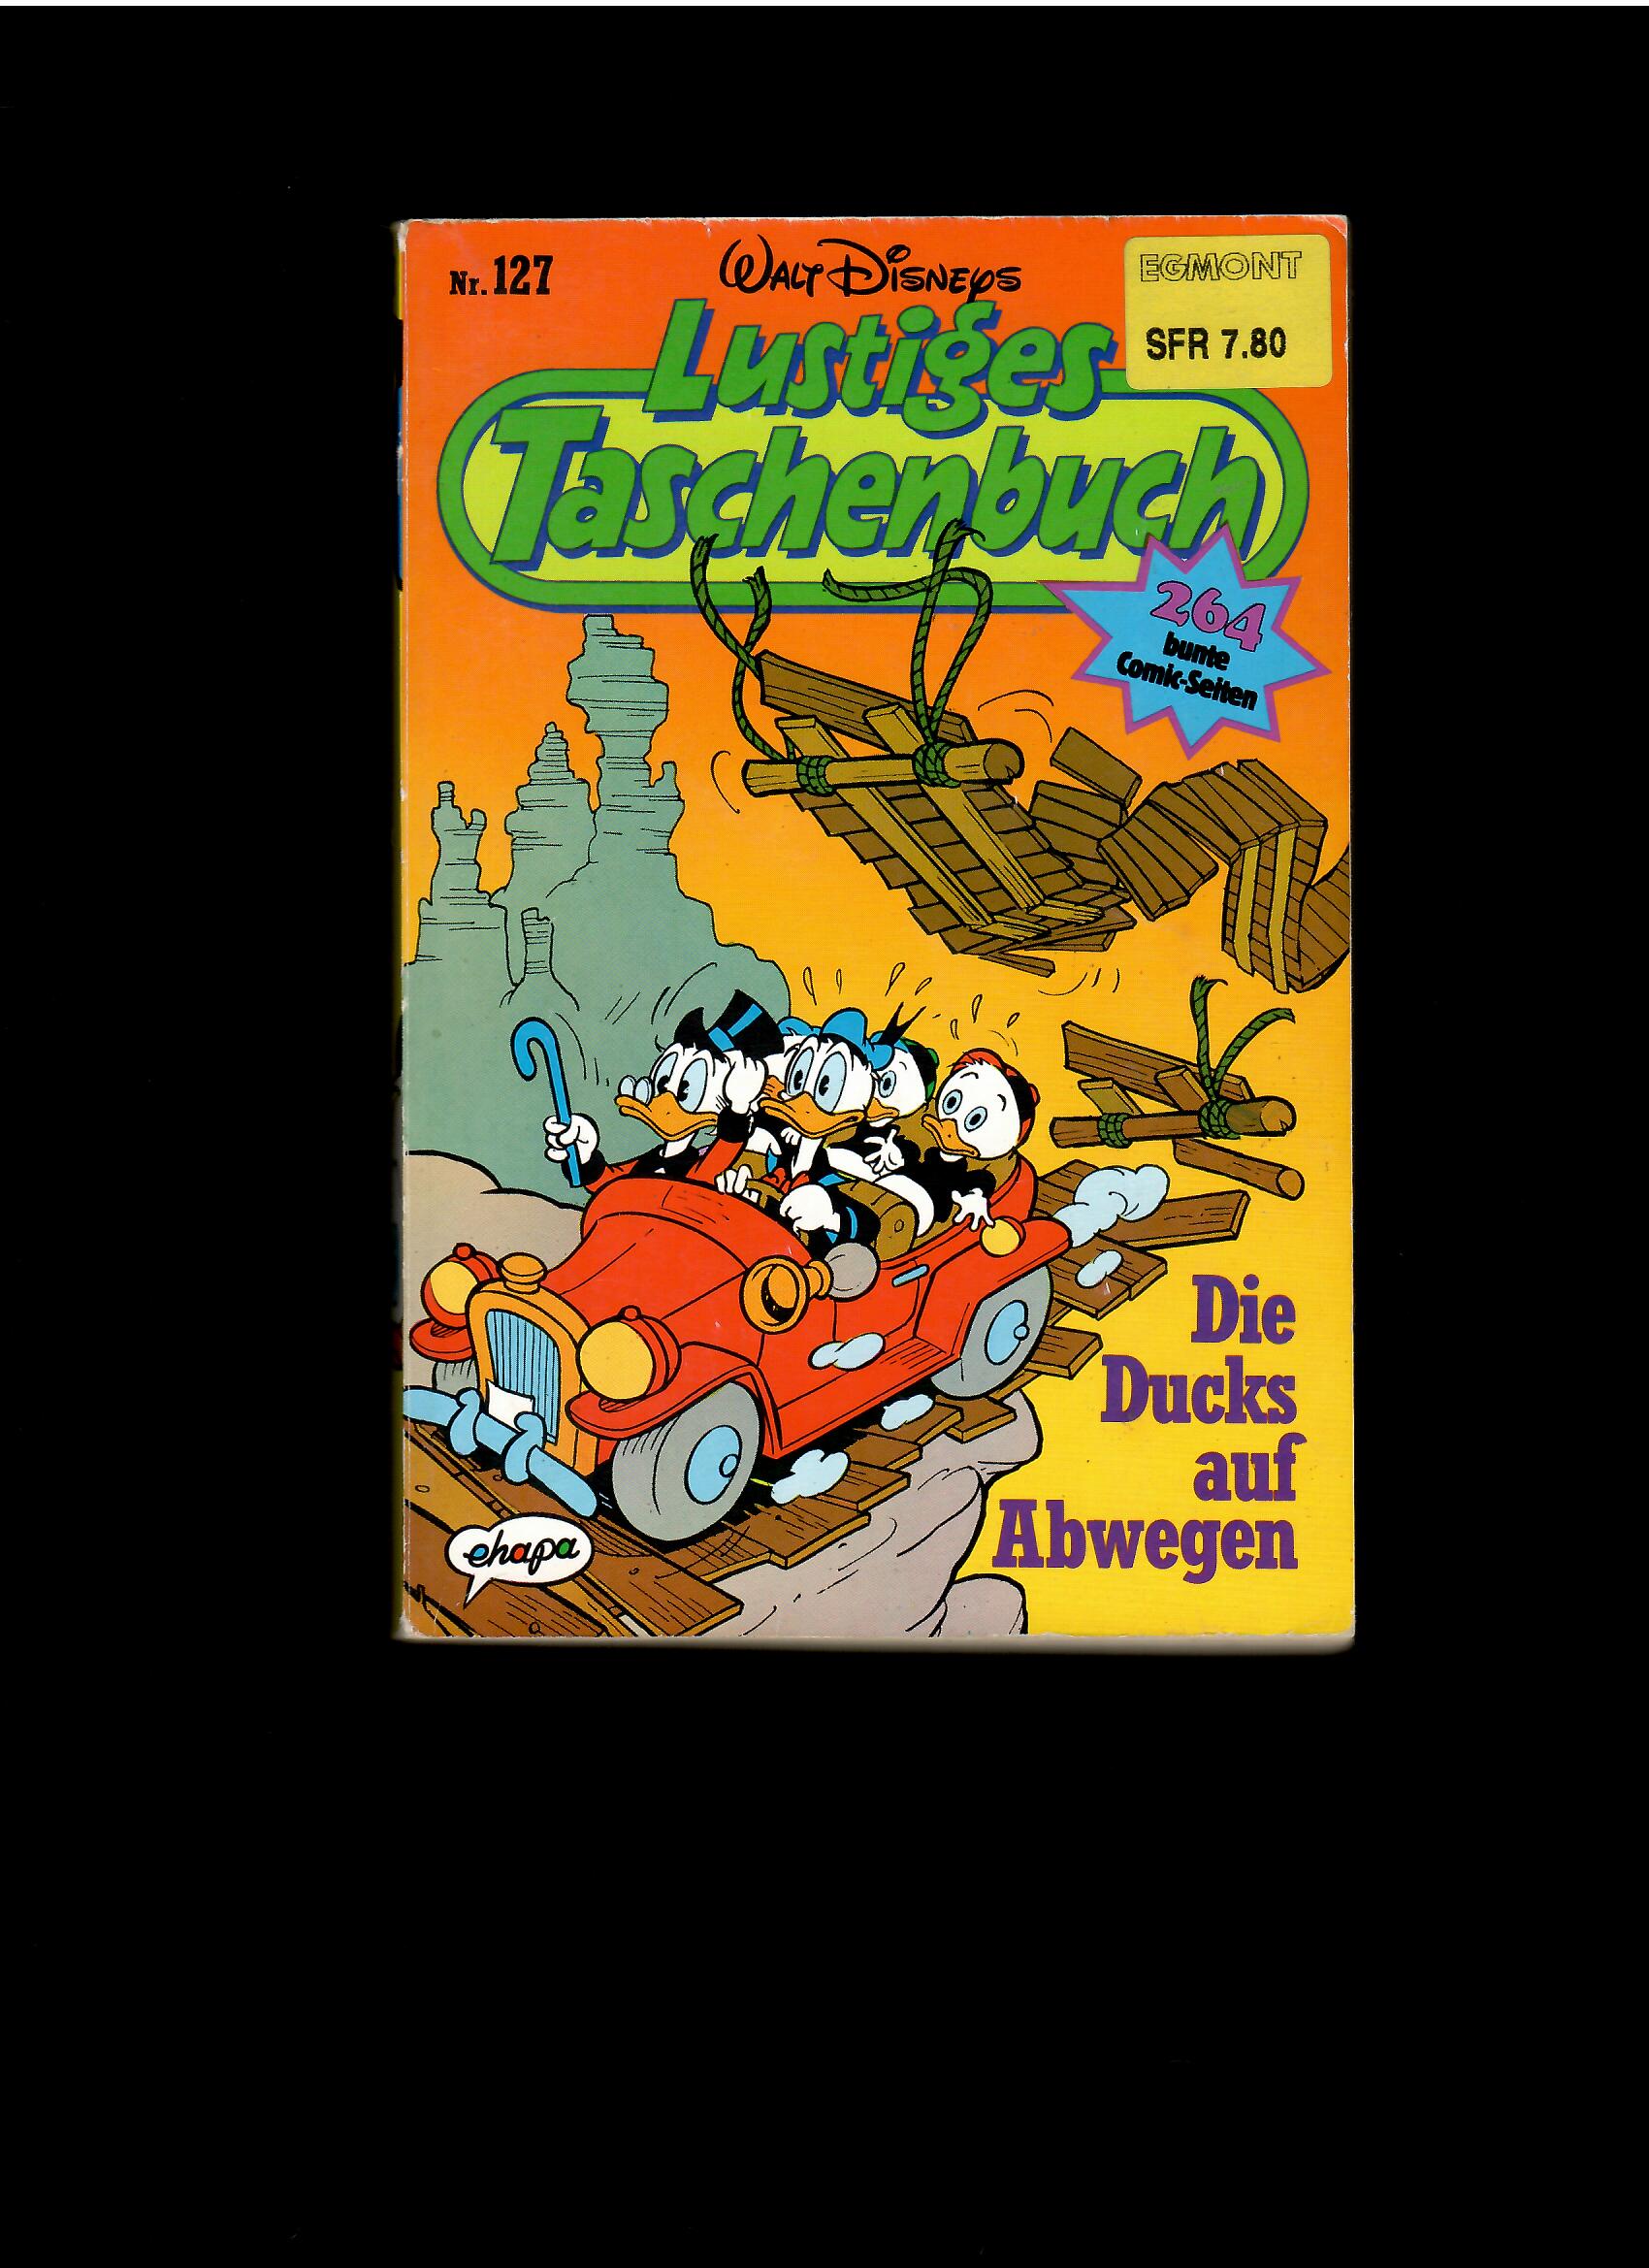 Walt Disneys Lustiges Taschenbuch Nr. 127 Die Ducks auf Abwegen